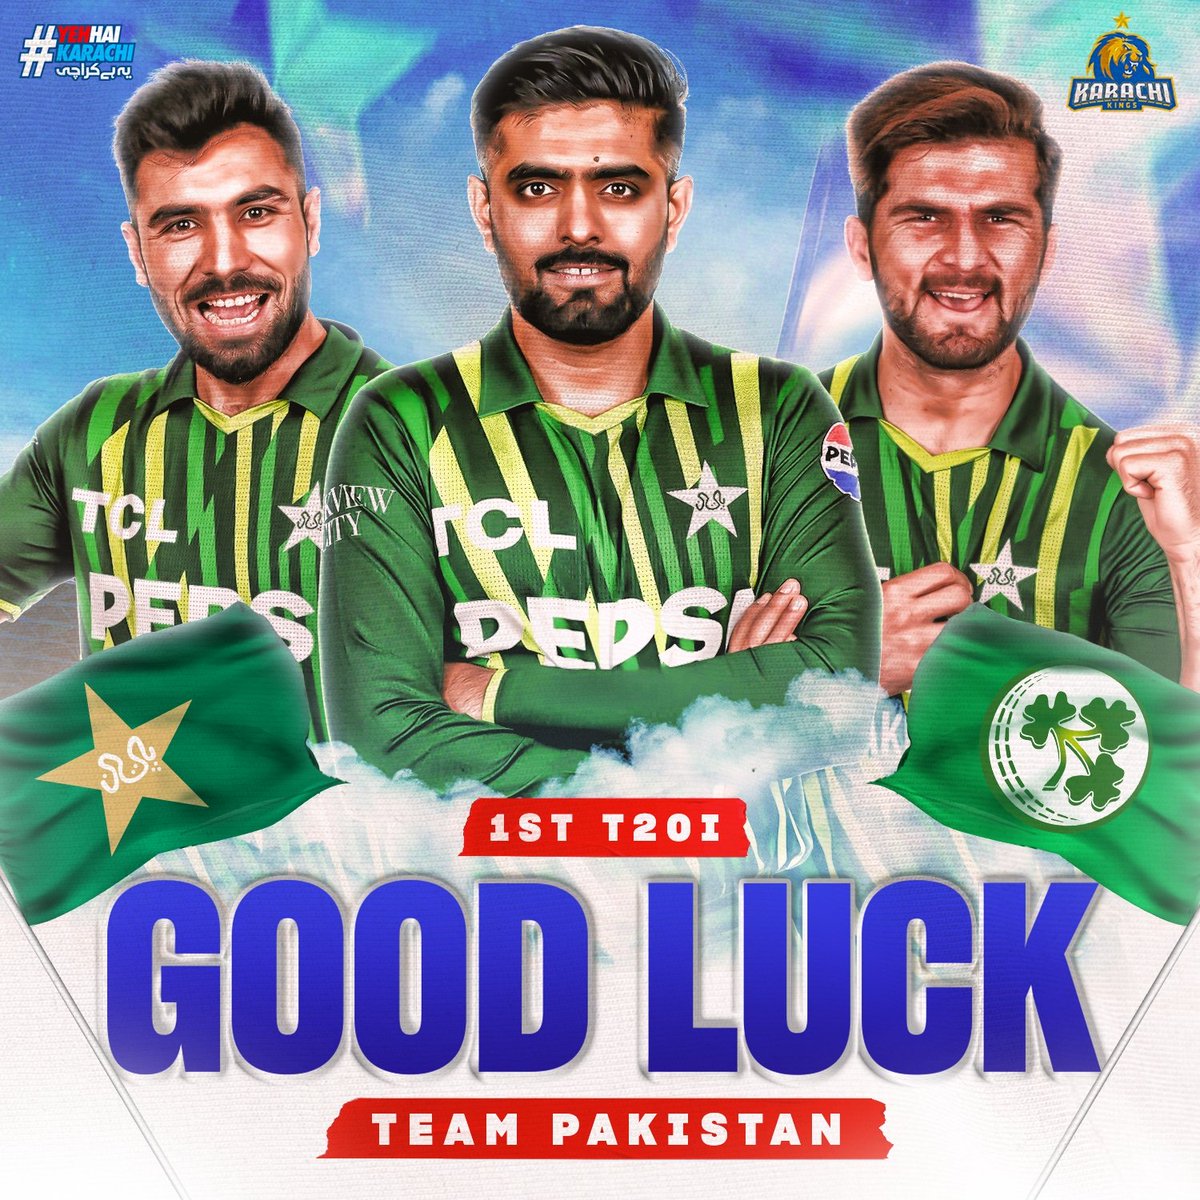 Action begins in Dublin! Good luck Pakistan Team 🇵🇰 for the 1st T20I against Ireland 🇮🇪 #YehHaiKarachi | #KingsSquad | #IREvPAK